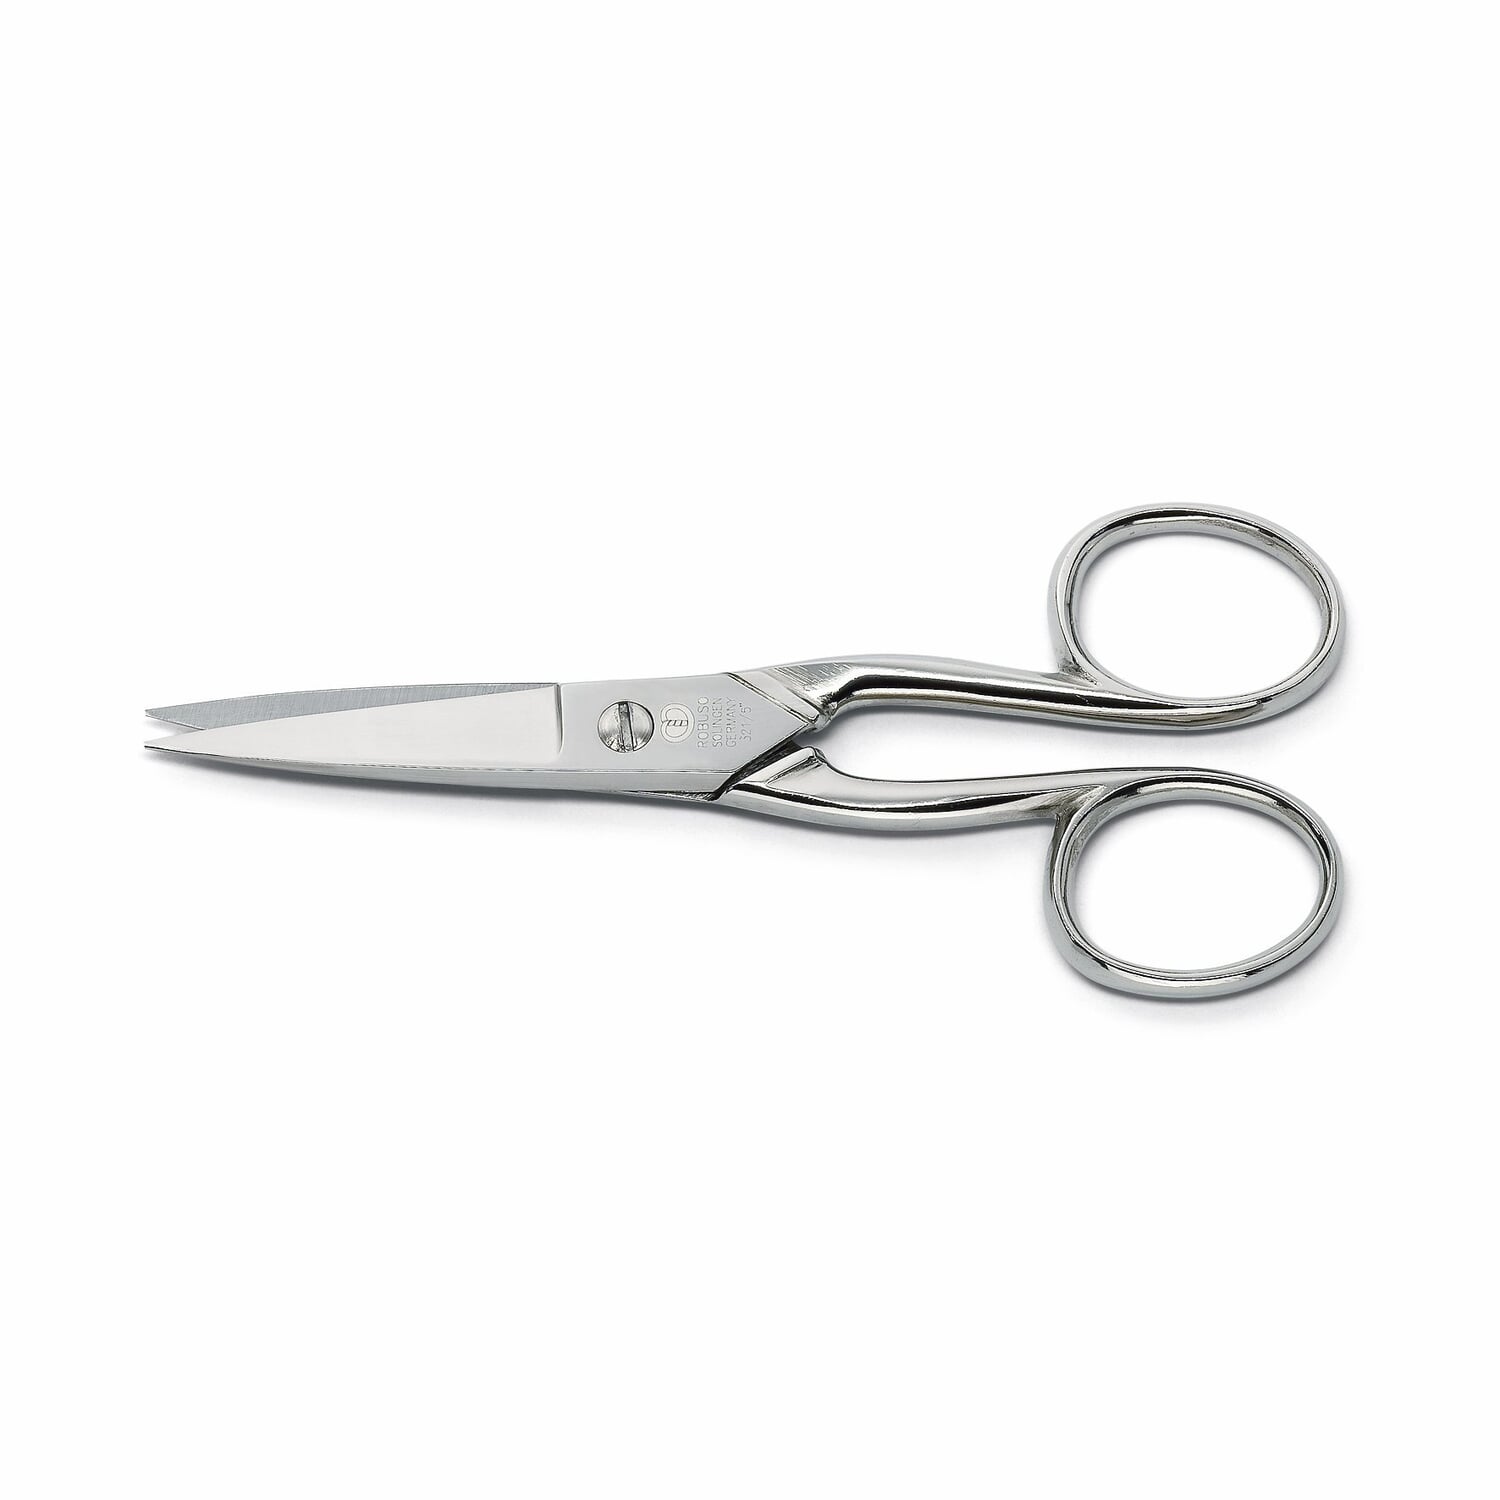 Tailor scissors Robuso